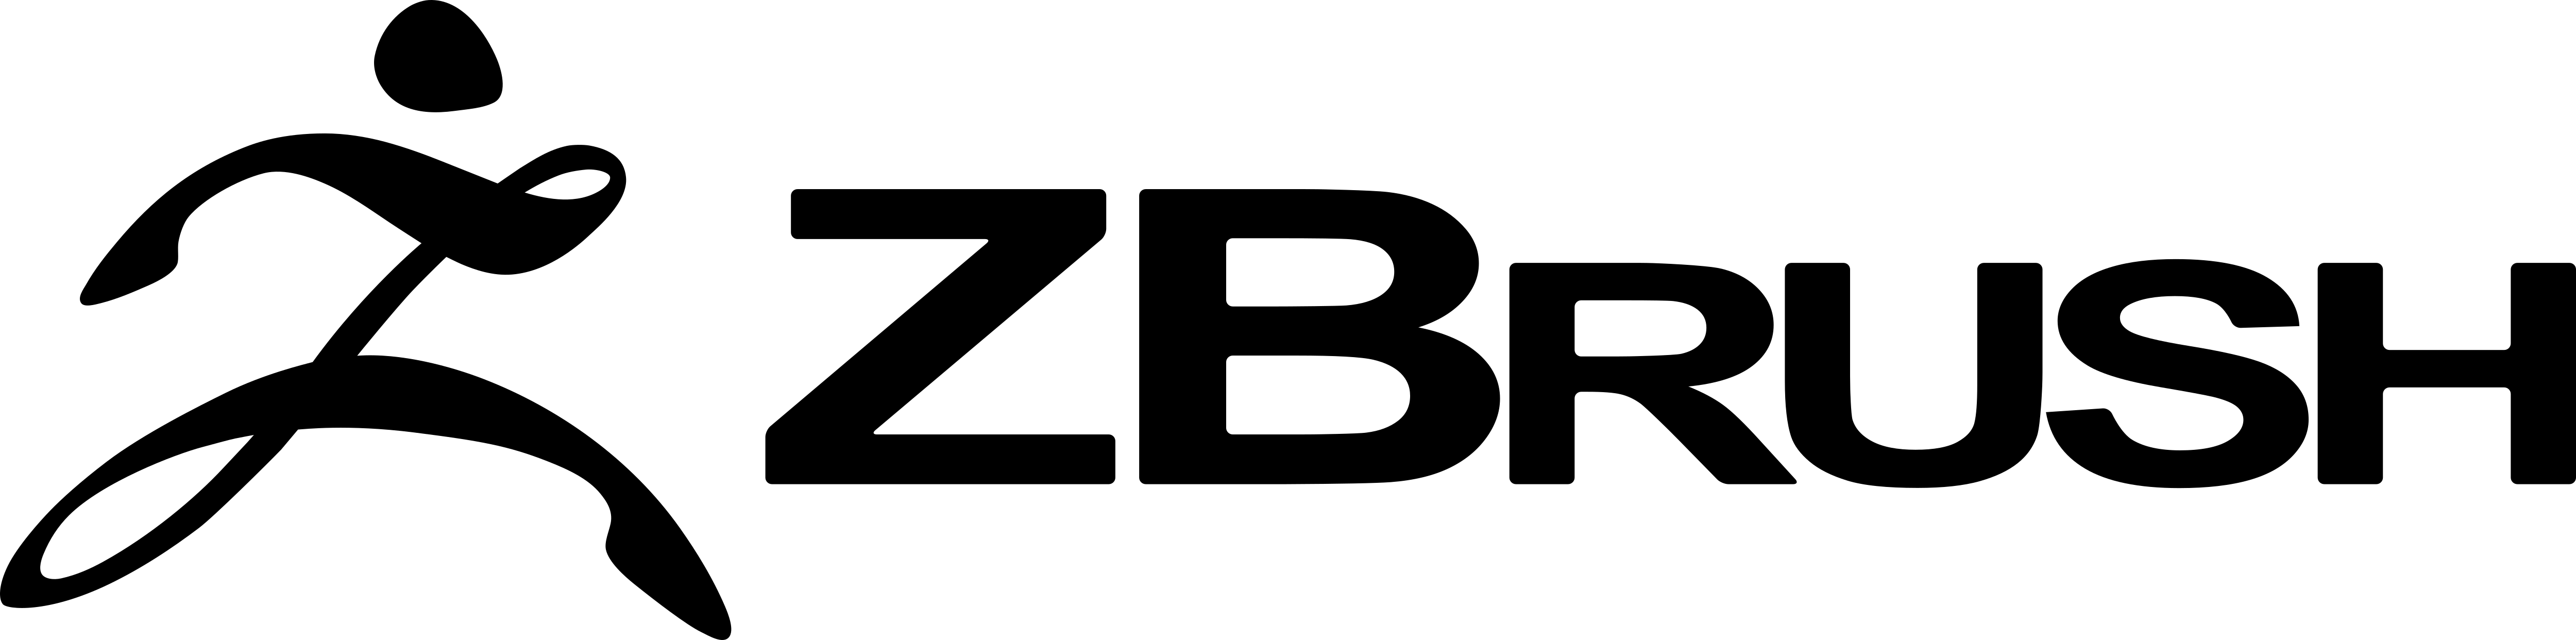 Zbrush_Logo